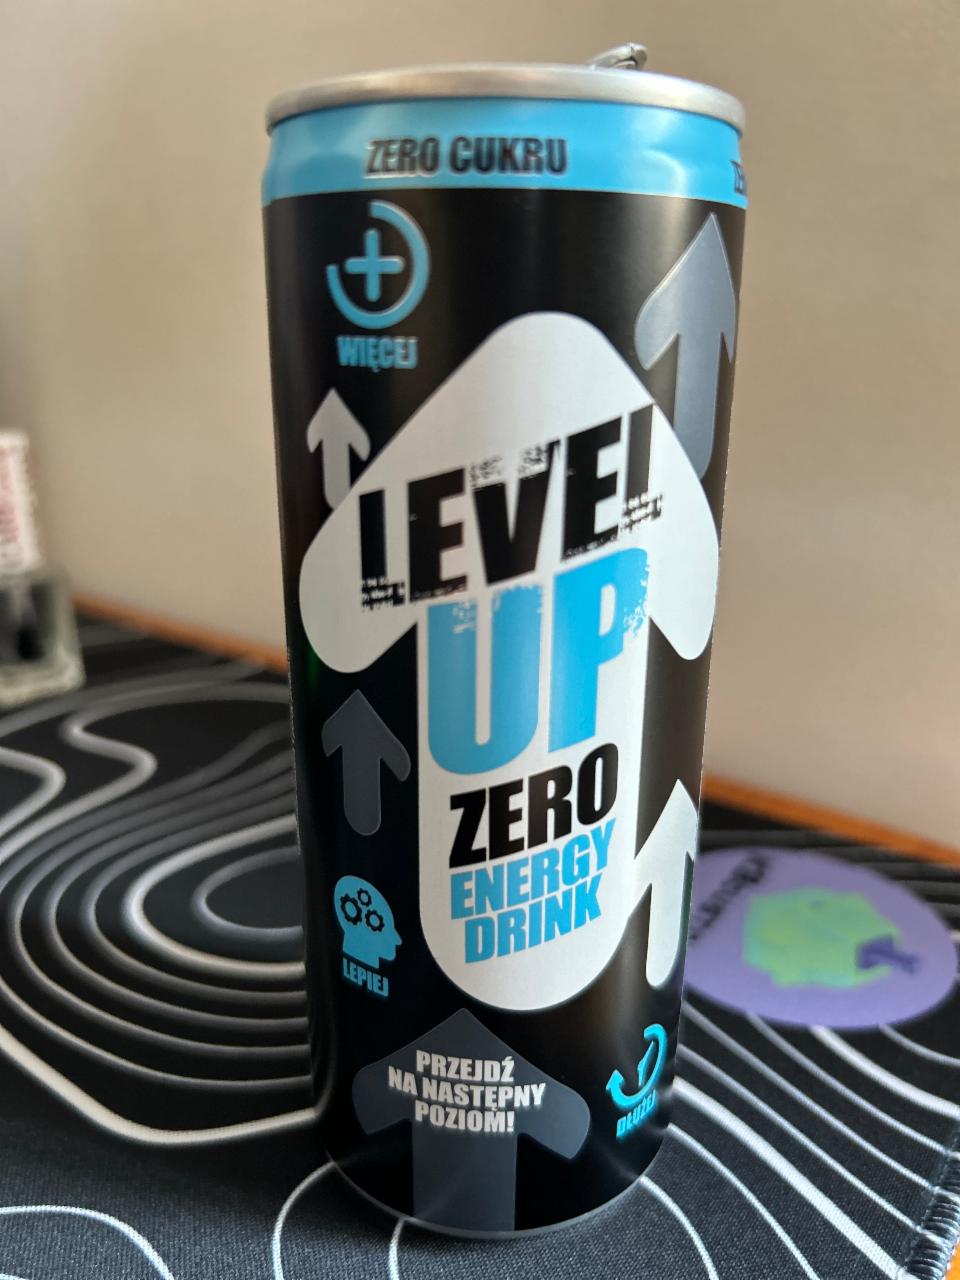 Zdjęcia - Level up zero energy drink